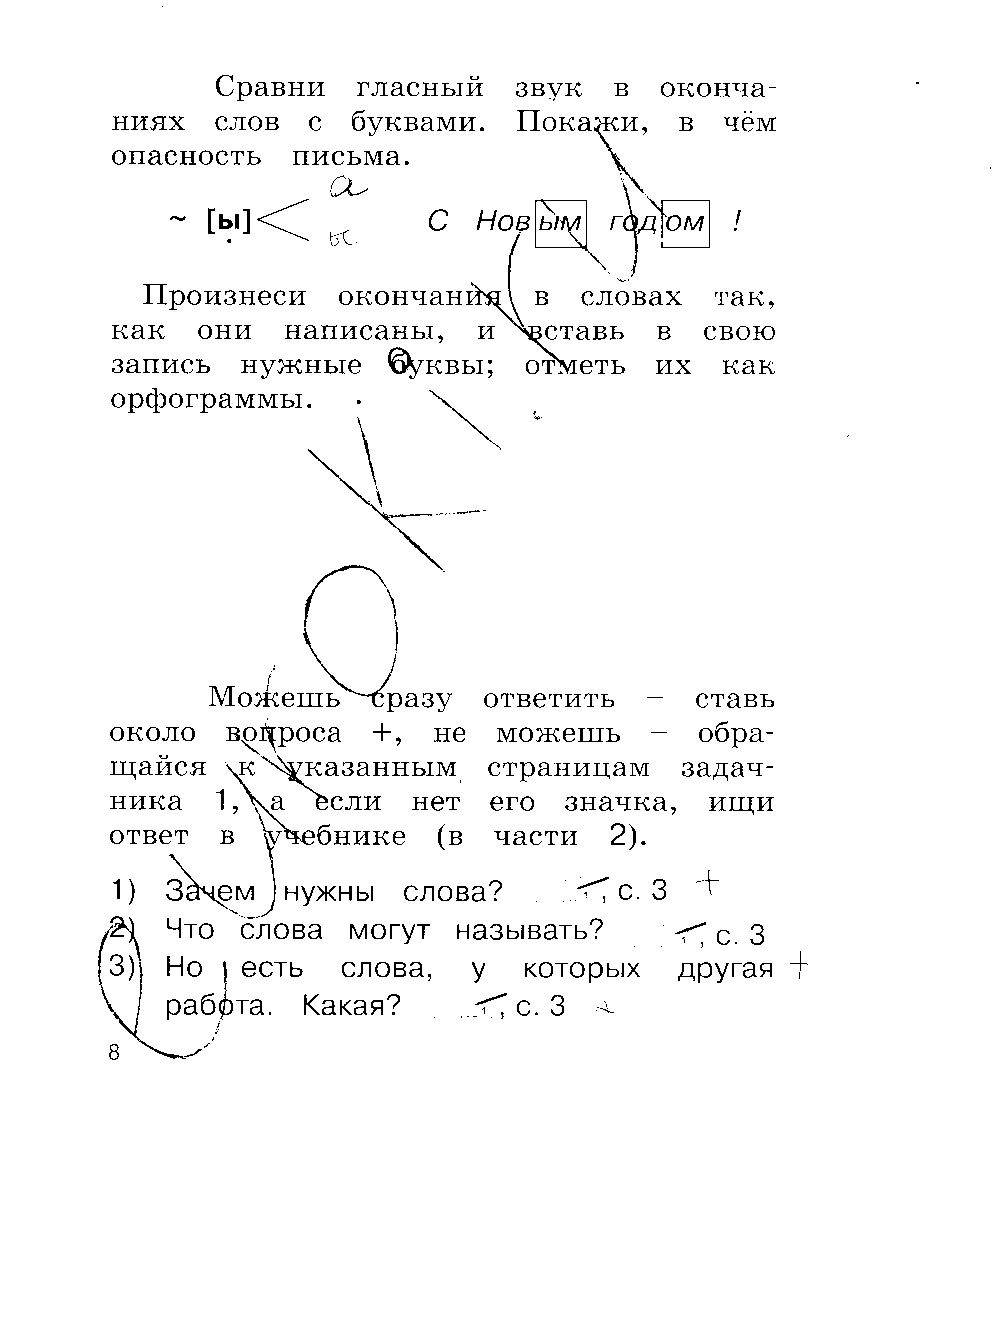 ГДЗ Русский язык 2 класс - стр. 8